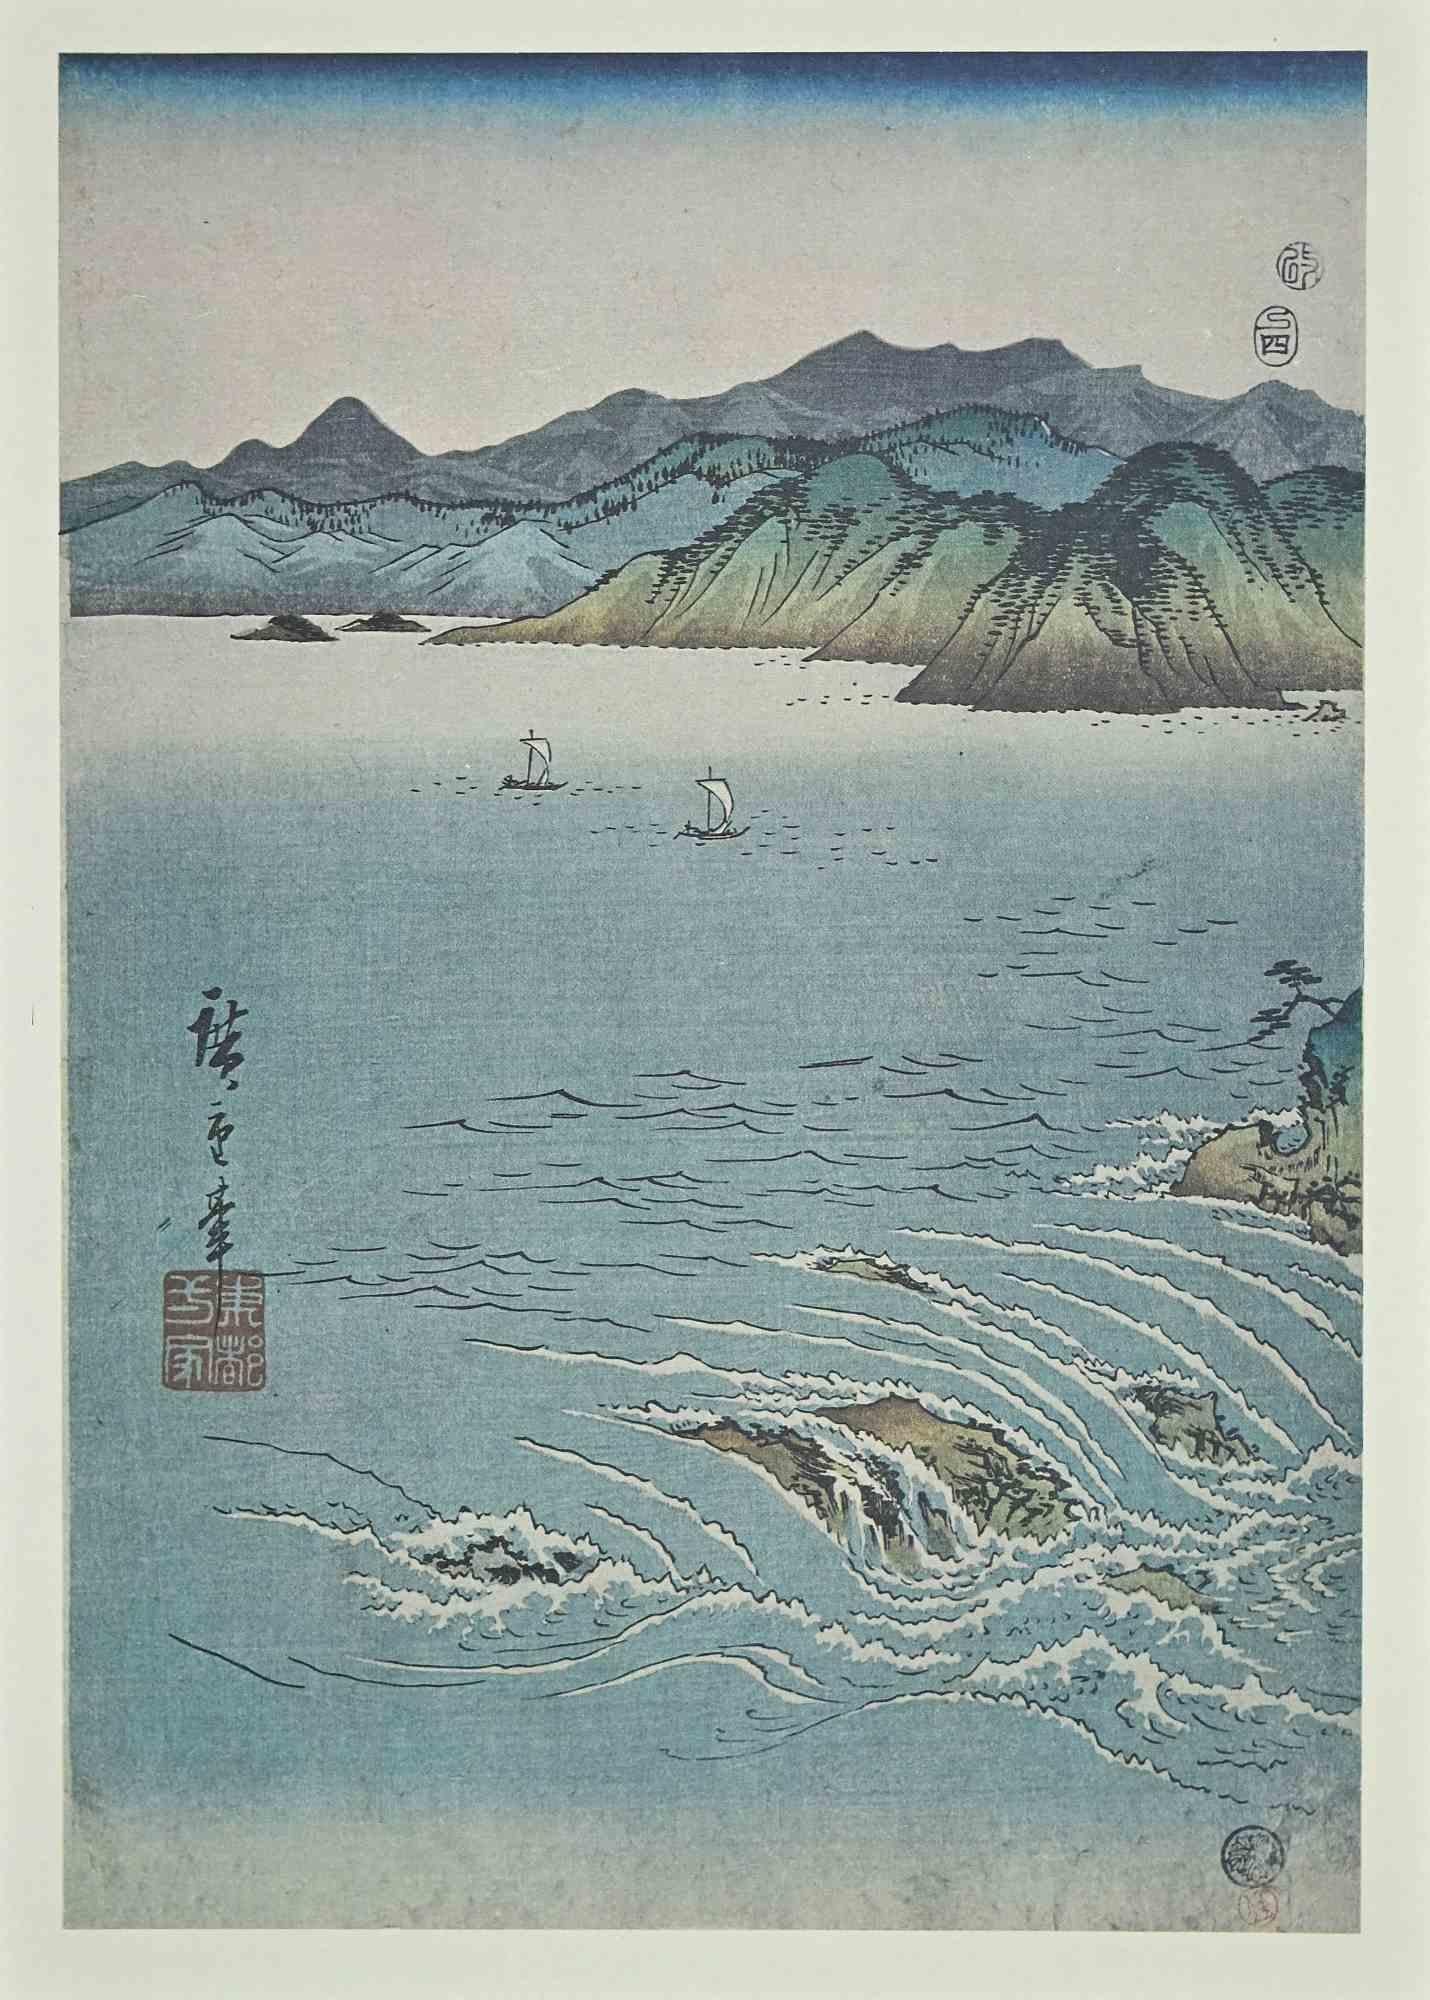 Whirlpool at Awa - Lithograph After Utagawa Hiroshige - 19th Century